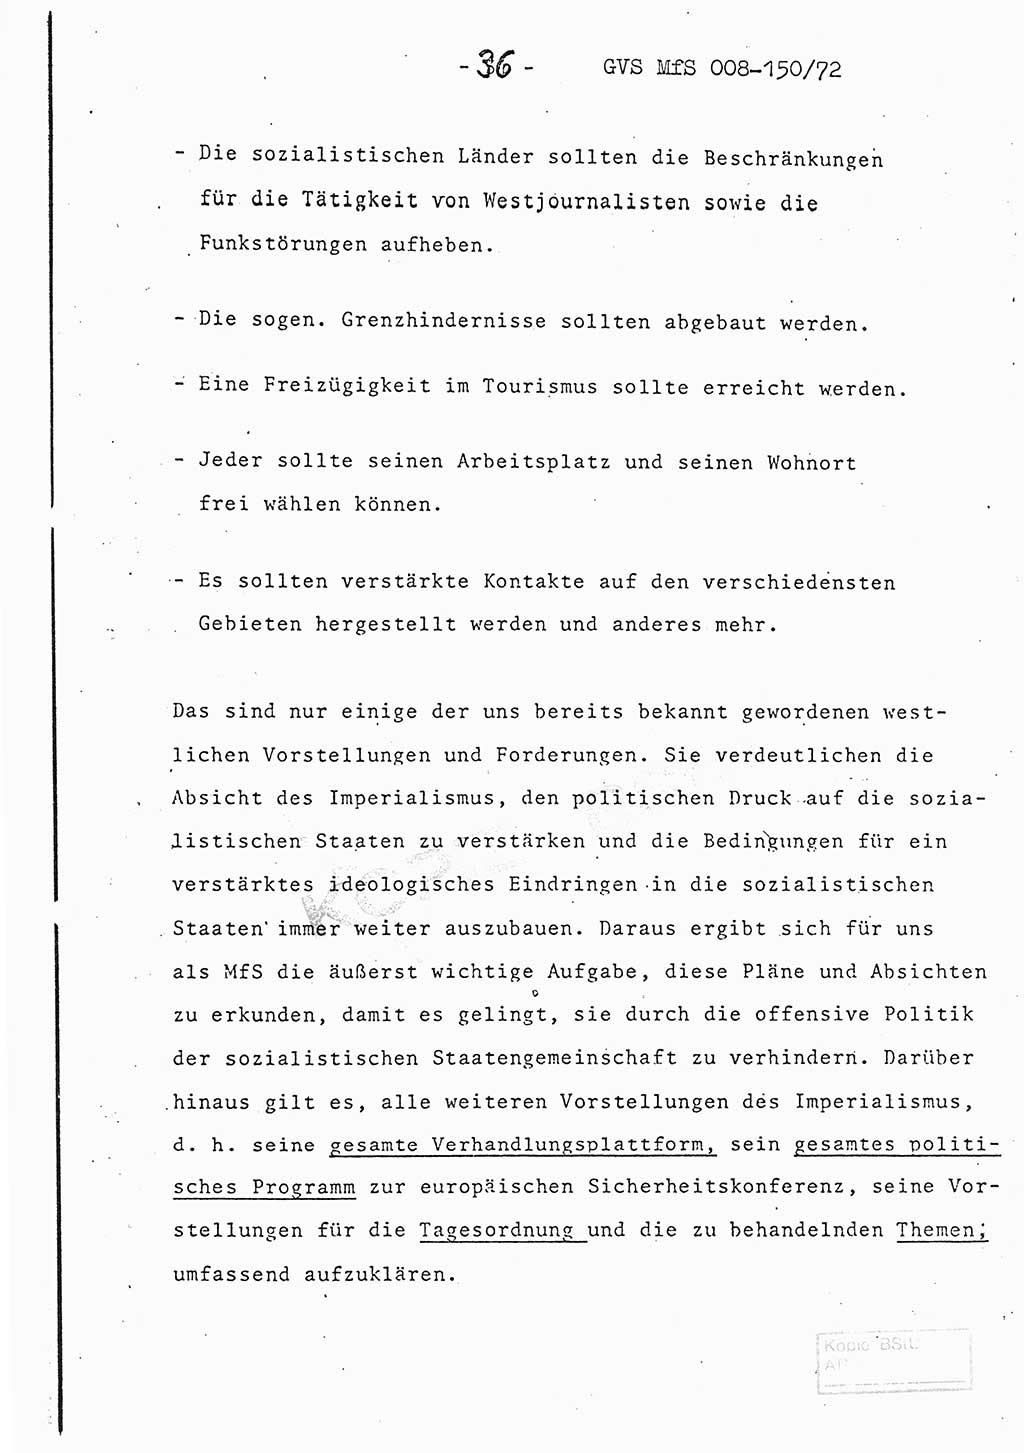 Referat (Entwurf) des Genossen Minister (Generaloberst Erich Mielke) auf der Dienstkonferenz 1972, Ministerium für Staatssicherheit (MfS) [Deutsche Demokratische Republik (DDR)], Der Minister, Geheime Verschlußsache (GVS) 008-150/72, Berlin 25.2.1972, Seite 36 (Ref. Entw. DK MfS DDR Min. GVS 008-150/72 1972, S. 36)